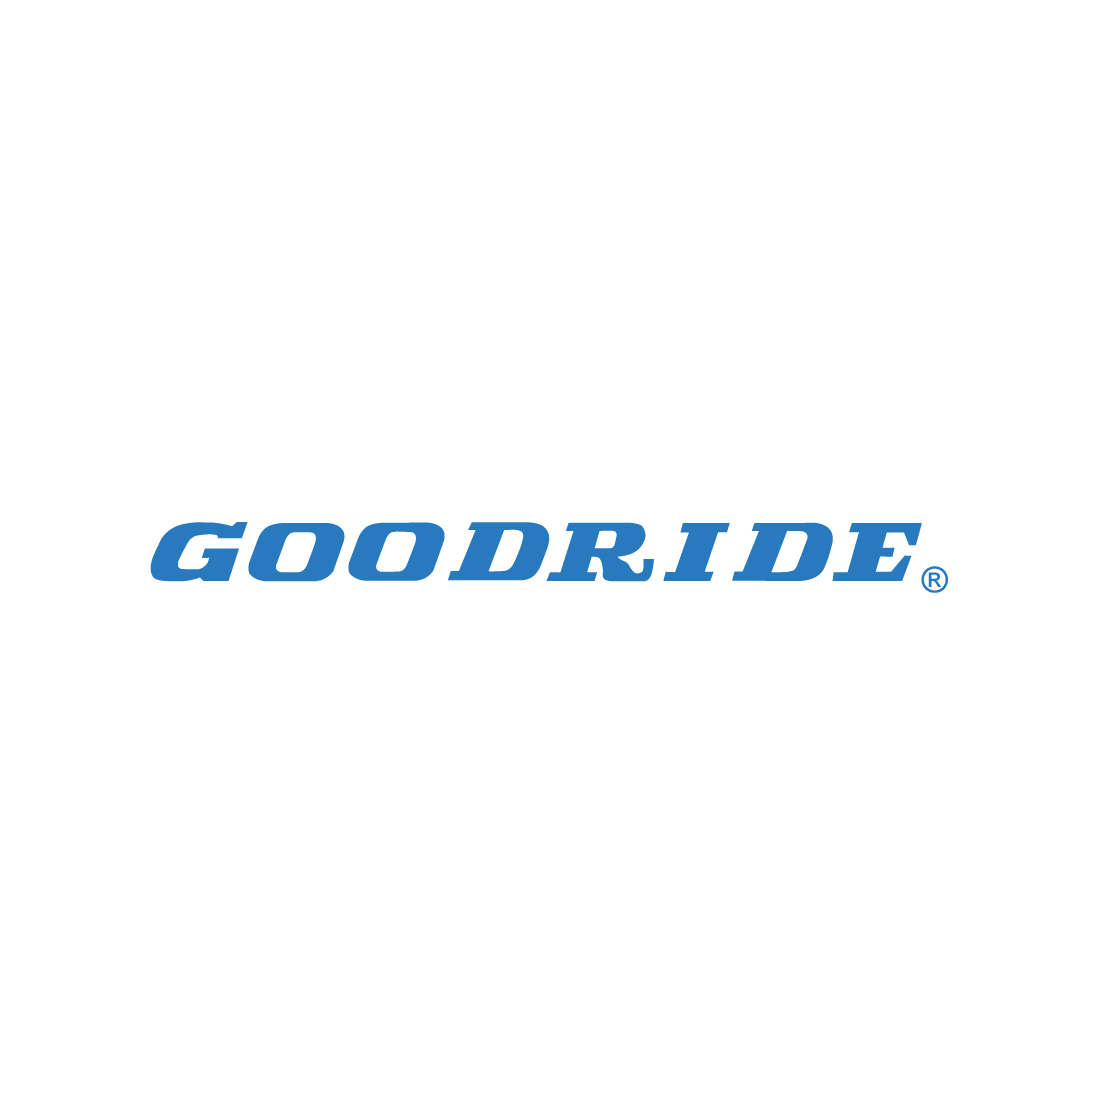 225/75/17.5 Goodride Gdr+1 post - 